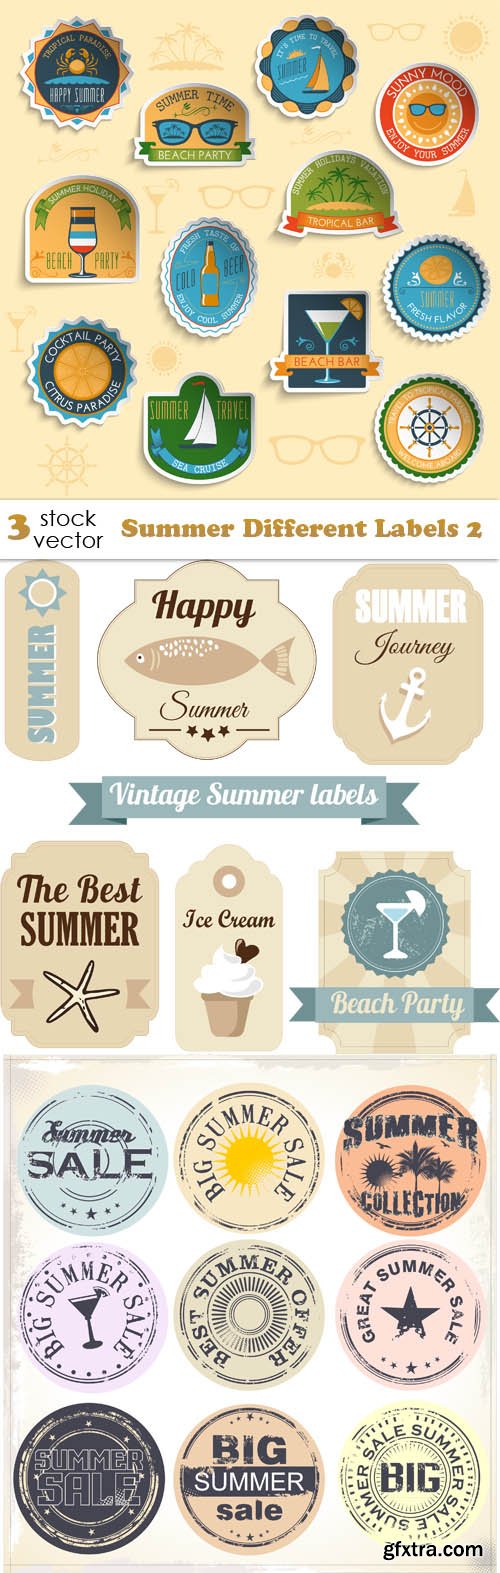 Vectors - Summer Different Labels 2